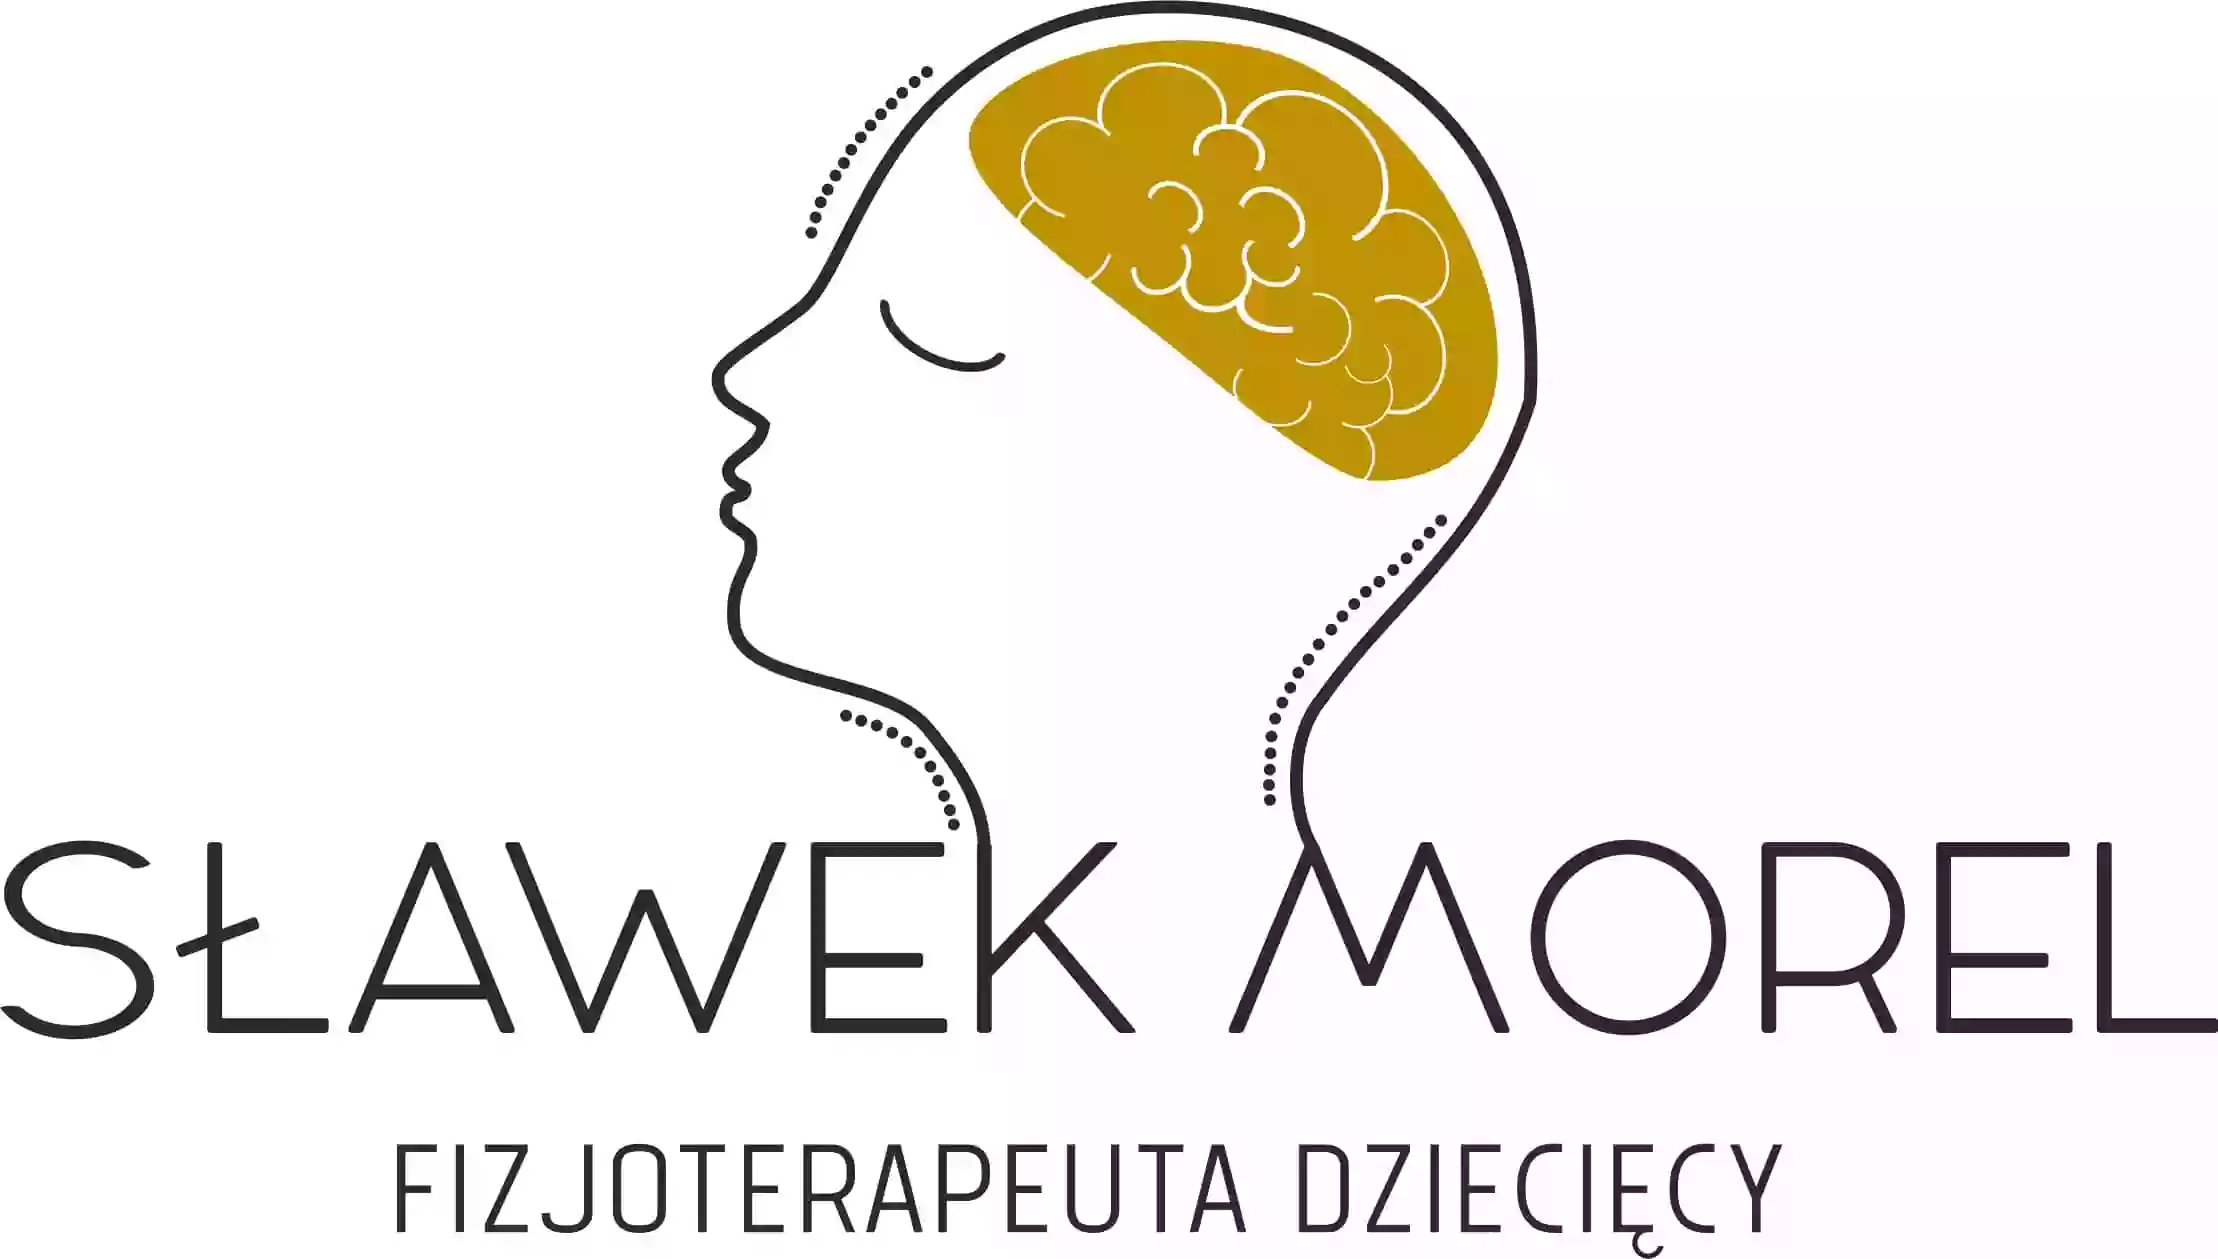 Fizjoterapeuta dziecięcy - Sławek Morel - FizjoSławek